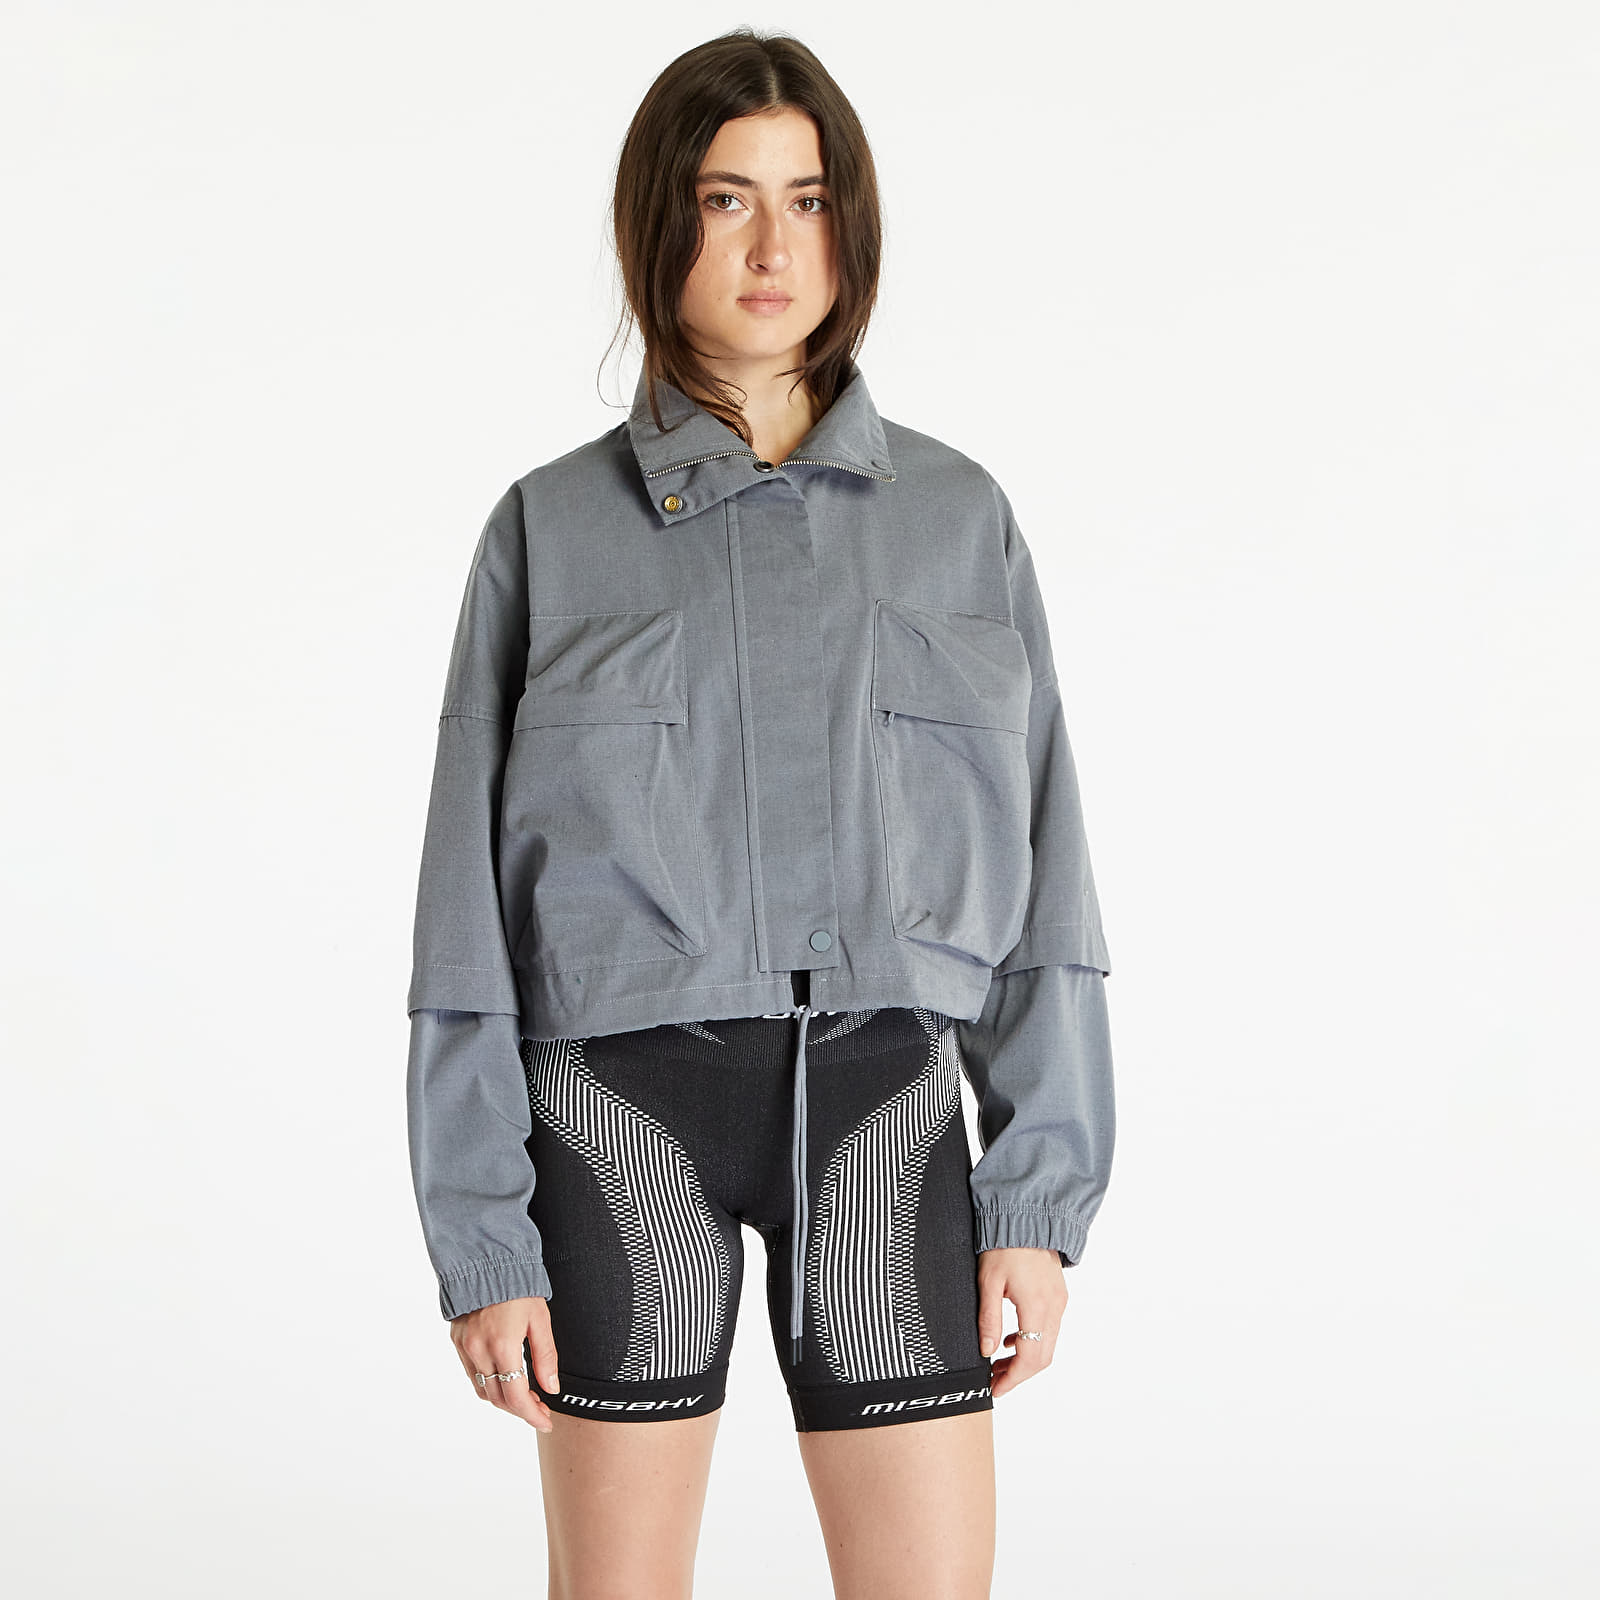 Bundy Nike Sportswear Women's Ripstop Jacket Grey Heather/ Cool Grey